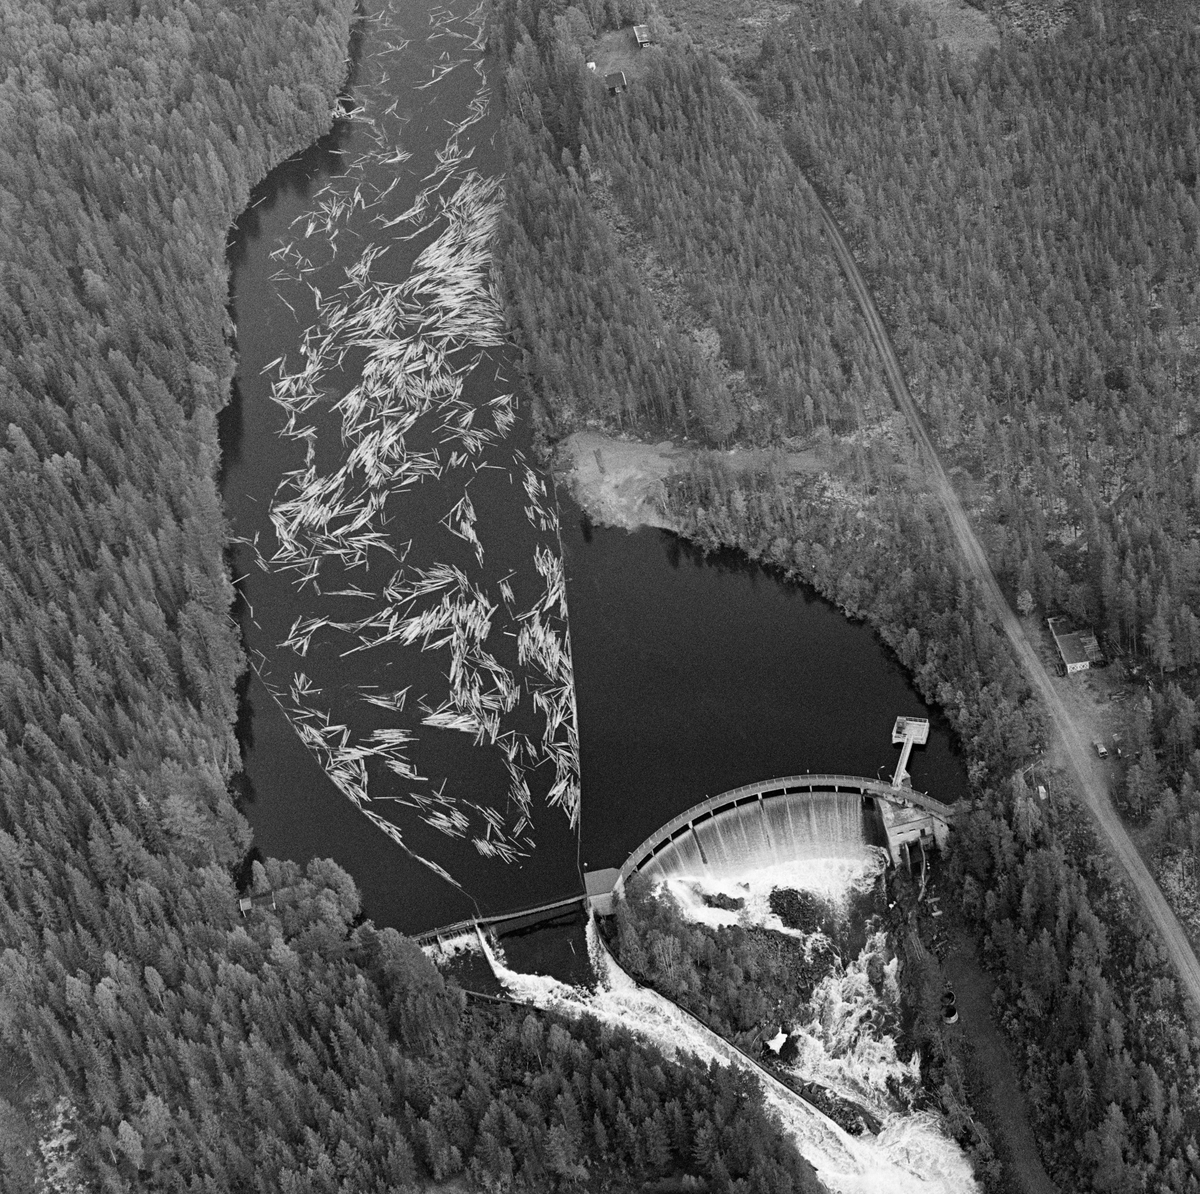 Flyfotografi tatt over kraftverksdammen i Osfallet i elva Søndre Osa i Åmot i Hedmark i mai 1984, den siste sesongen det foregikk tømmerfløting i denne delen av Glomma-vassdraget.  Bildet er tatt fra vest.  Fotografiet viser hvordan tømmerstokkene kom flytende med strømretningen over kraftverksdammen, der det var lagt ut lenser for å lede virket mot tømmerløpet som var plassert mot det nordre landet, hvor fallhøyden var mindre enn nedenfor den buete hoveddammen mot søndre landside.  Etter å ha passert dammen ble stokkene ført med strømmen i kvitskummende vann ned mot utløpet i elva Søndre Rena, cirka to kilometer lengre vest.  Damanlegget på fotografiet skal ha vært ferdigstilt i 1947.  Den ble noe ombygd i 1981.  Ettersom vassdragslovgivinga påla dem som drev tømmerfløting å fjerne installasjoner i vann ved opphør av virksomheten, ble tømmerløpet ved Osfallsdammen revet umiddelbart etter at fløtinga på dette fotografiet var avviklet.  Energiproduksjonen ved denne lokaliteten foregår i en kraftstasjonsbygning fra 1914, cirka en kilometer nedenfor den avbildete dammen, hvor det er installert to francisturbiner som kan yte 5.5 megawatt.  Den opprinnelige dammen ble ødelagt ved et dambrudd i 1916.  Det nåværende kraftverket utnytter et fall på 41 meter i elva Søndre Osa.  Vegen på sørsida av vassdraget fører ned til kraftstasjonen og derfra mot Fylkesveg 215 ved Oset.